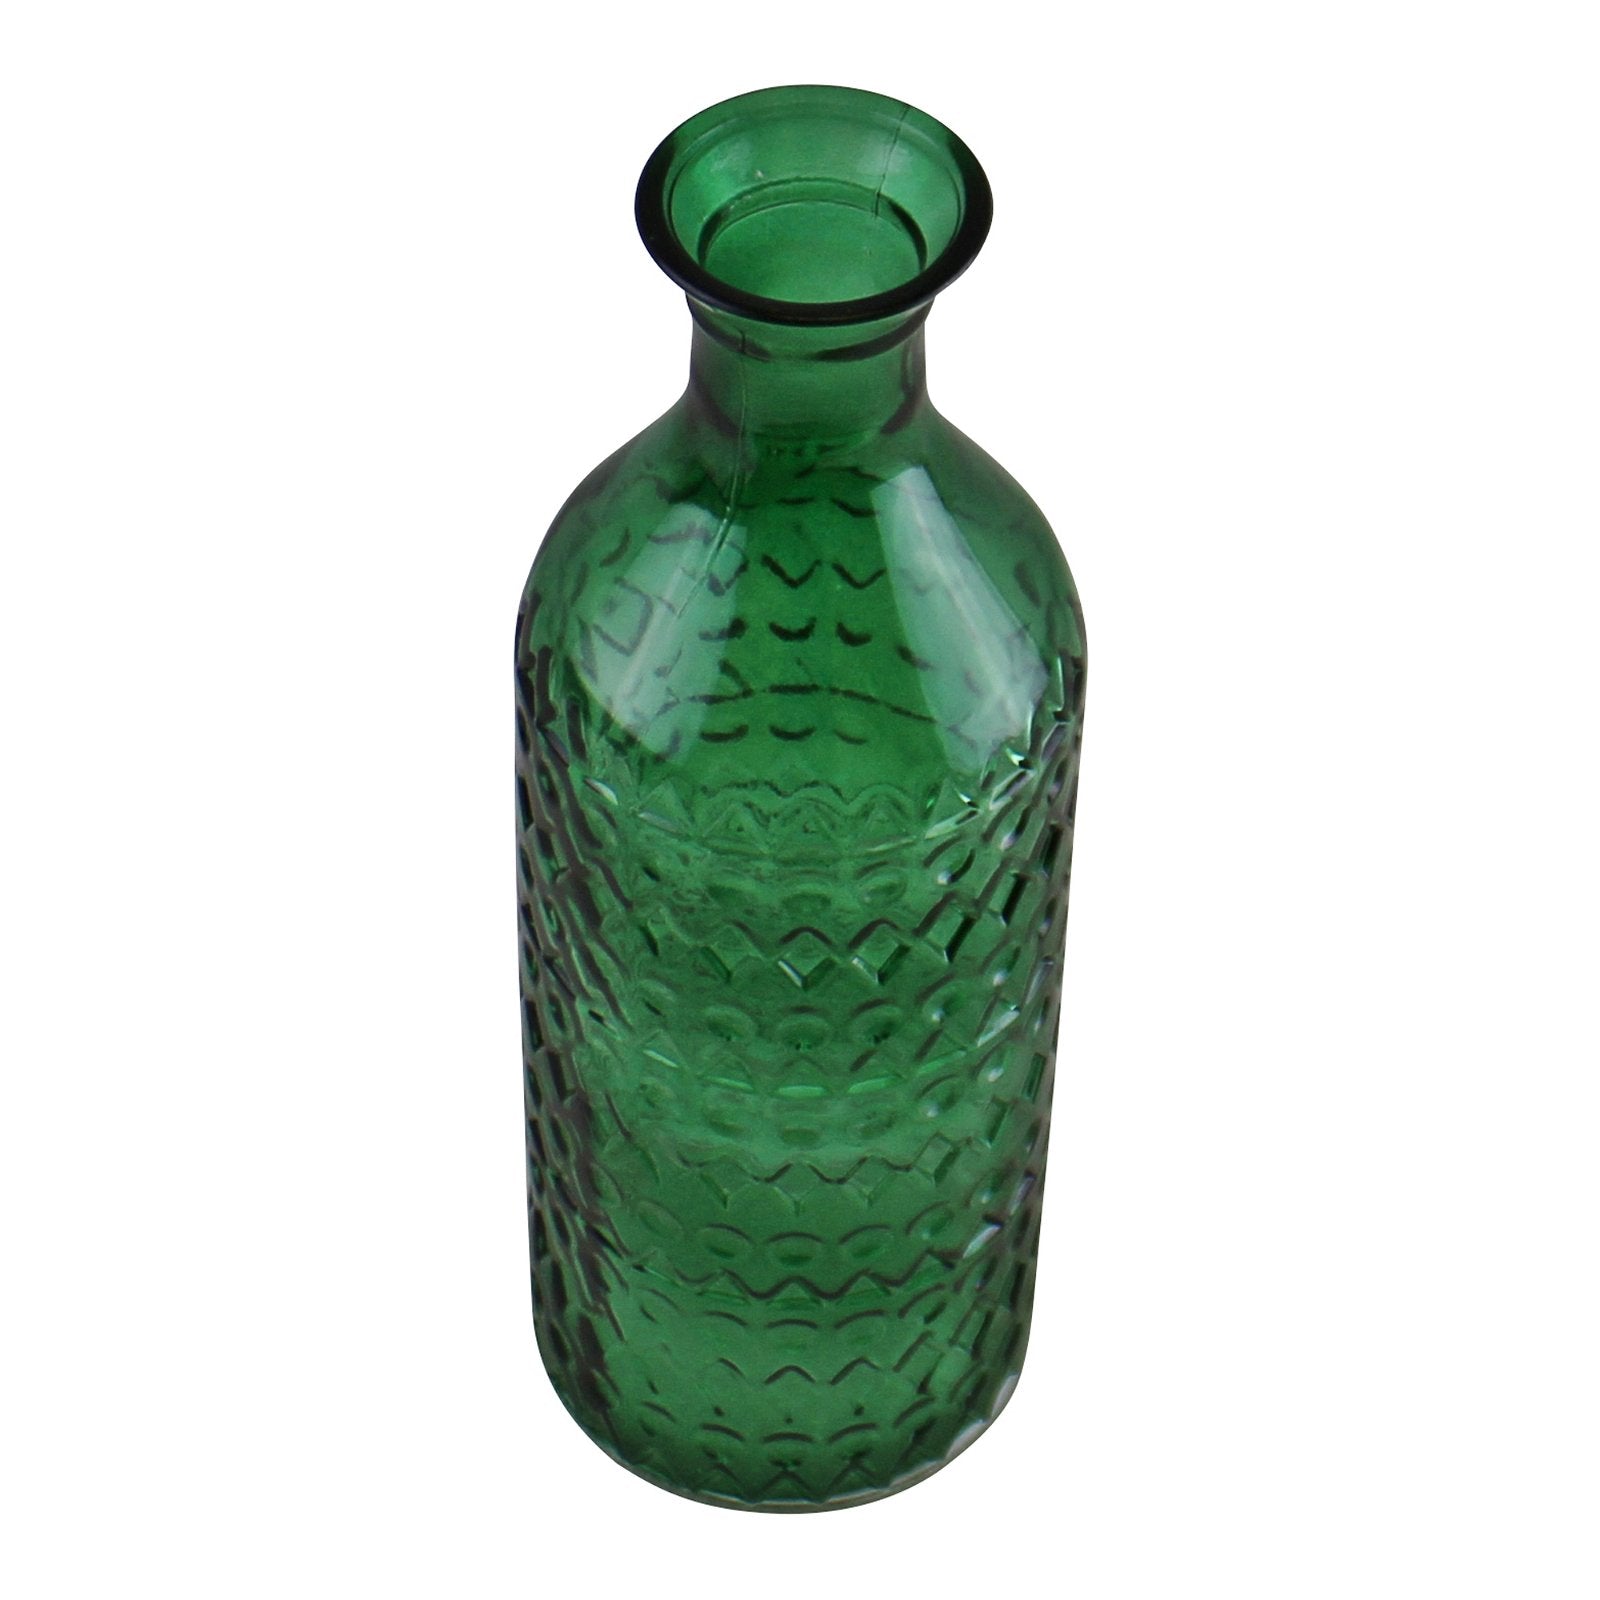 Small Geometric Embossed Glass Bottle Style Vase, Dark Green